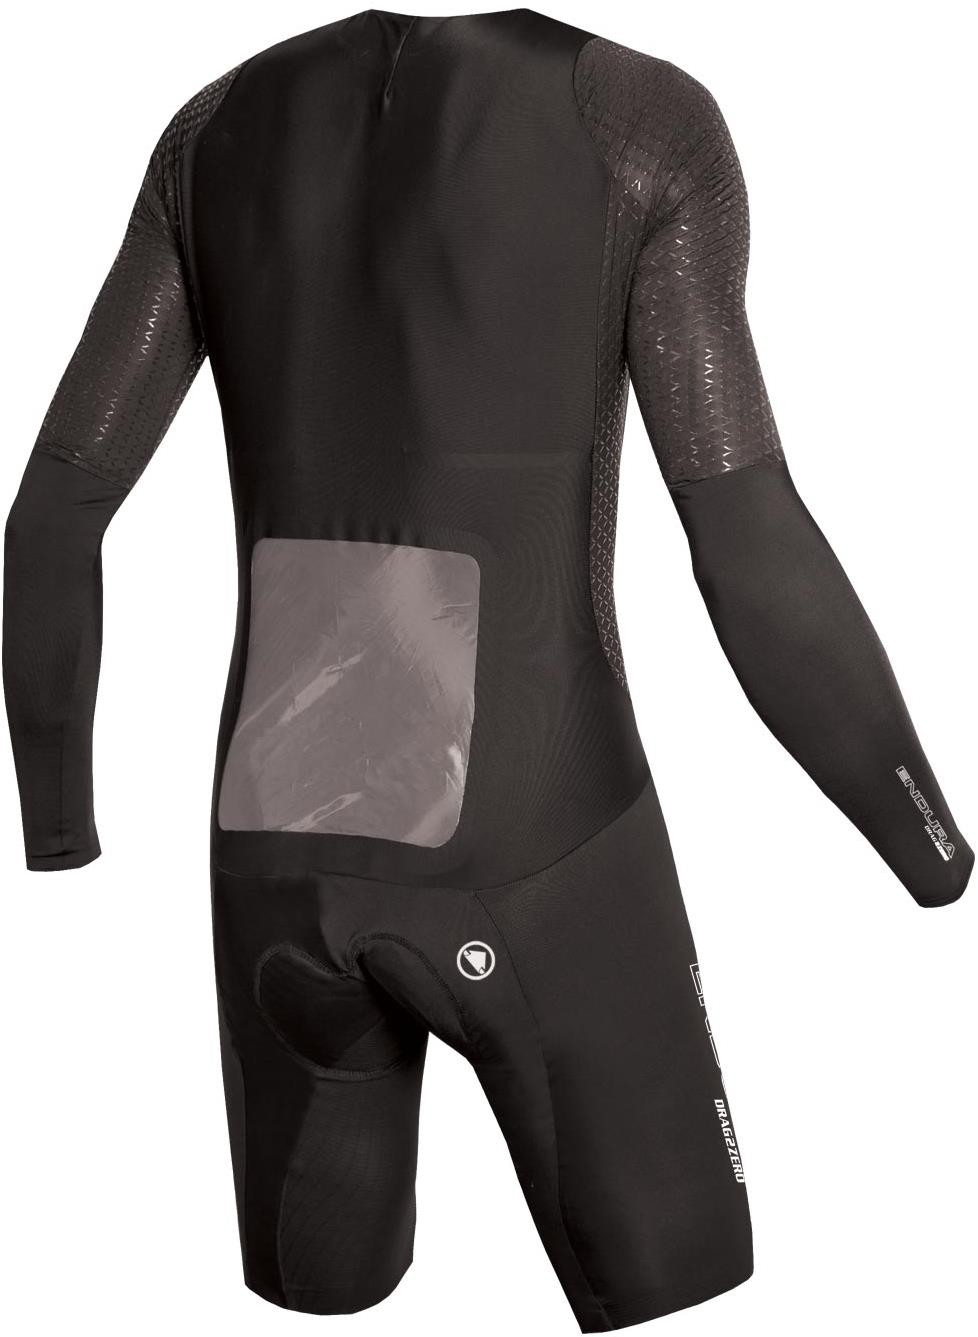 D2Z Encapsulator Cycling Suit image 1